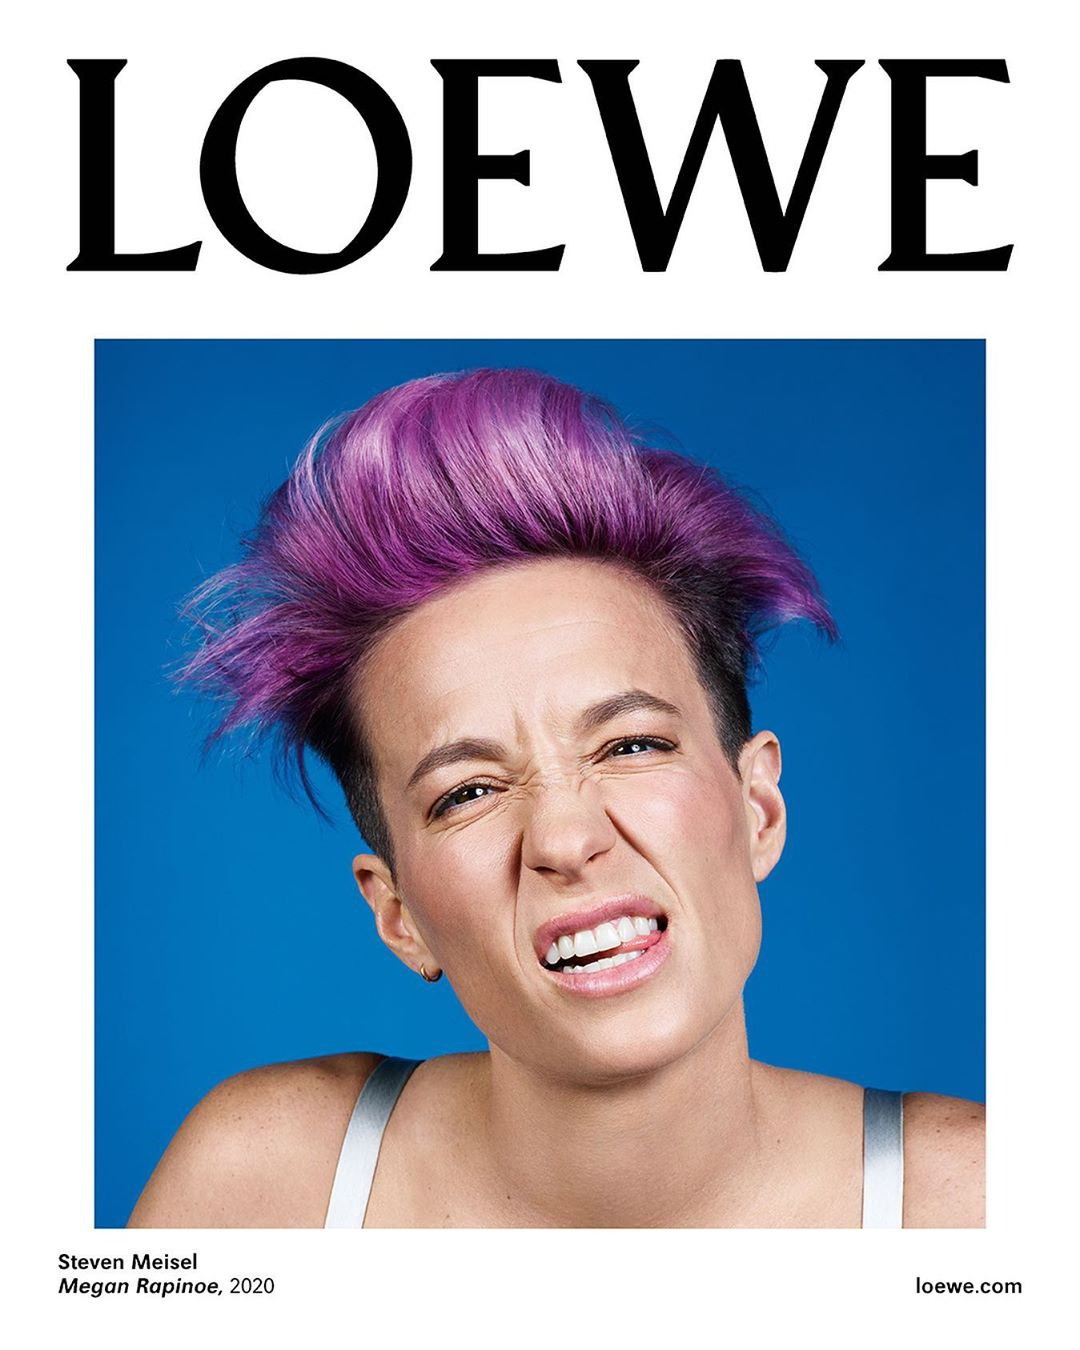 Меган Рапино в рекламной кампании Loewe, январь 2020